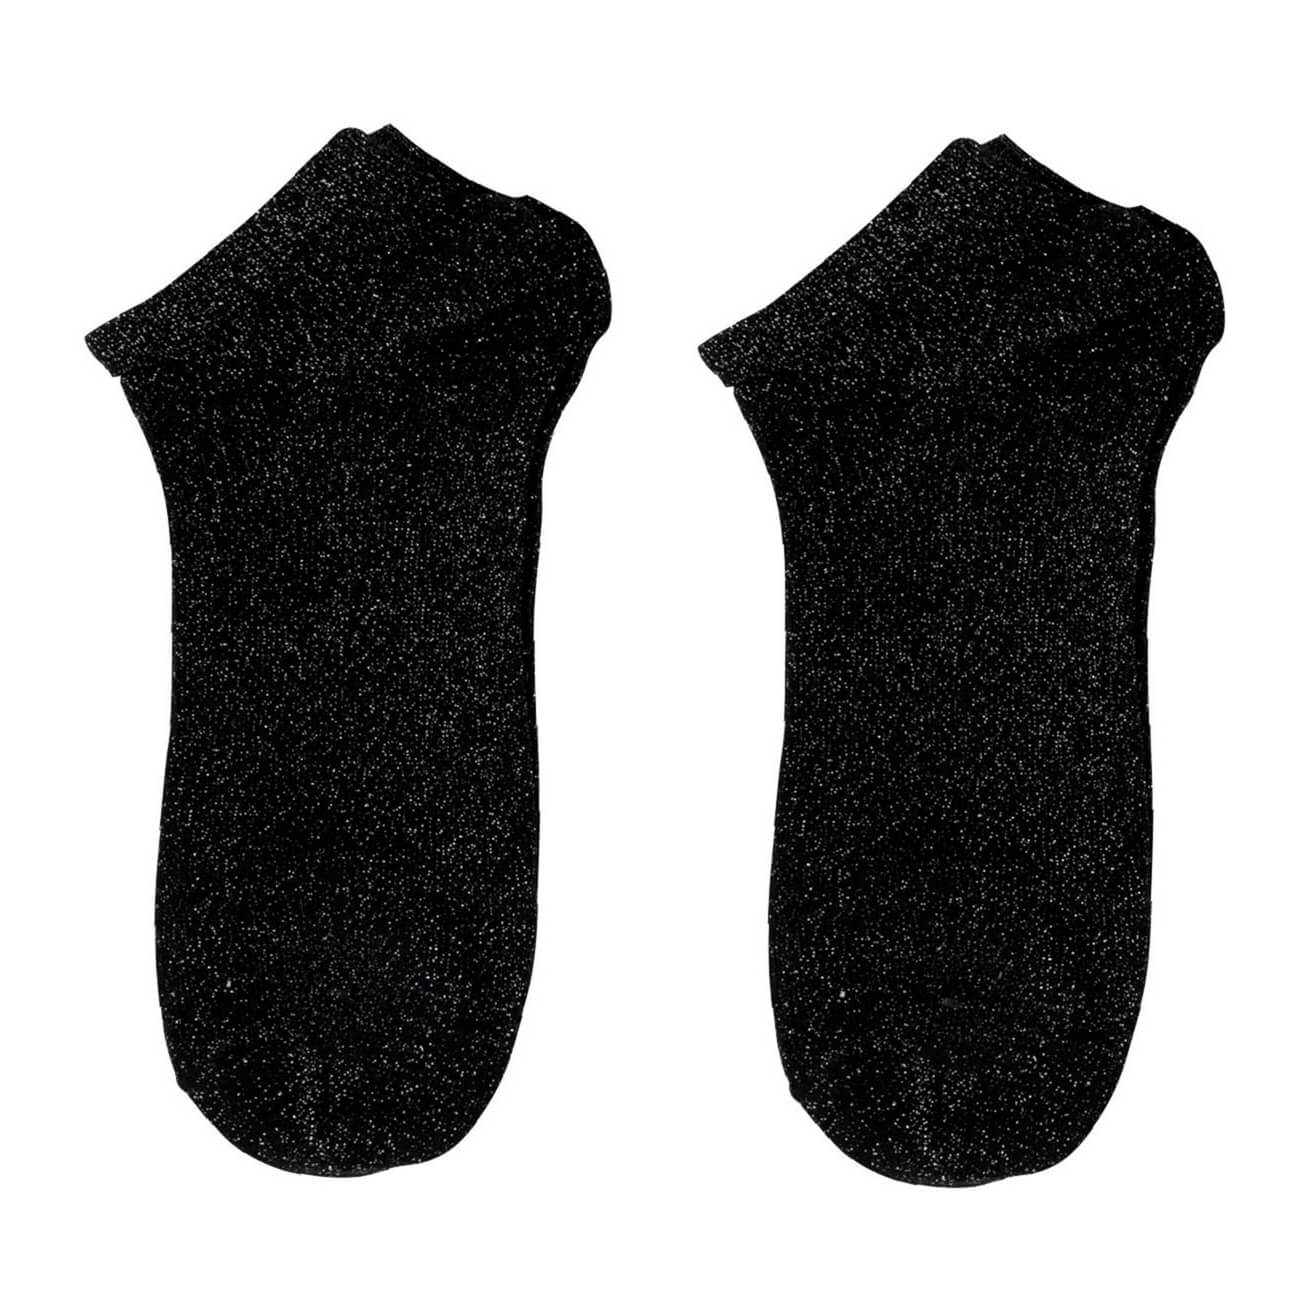 Носки женские, р. 39-41, хлопок/полиэстер, черные, Glint носки женские р 36 38 хлопок полиэстер черные basic